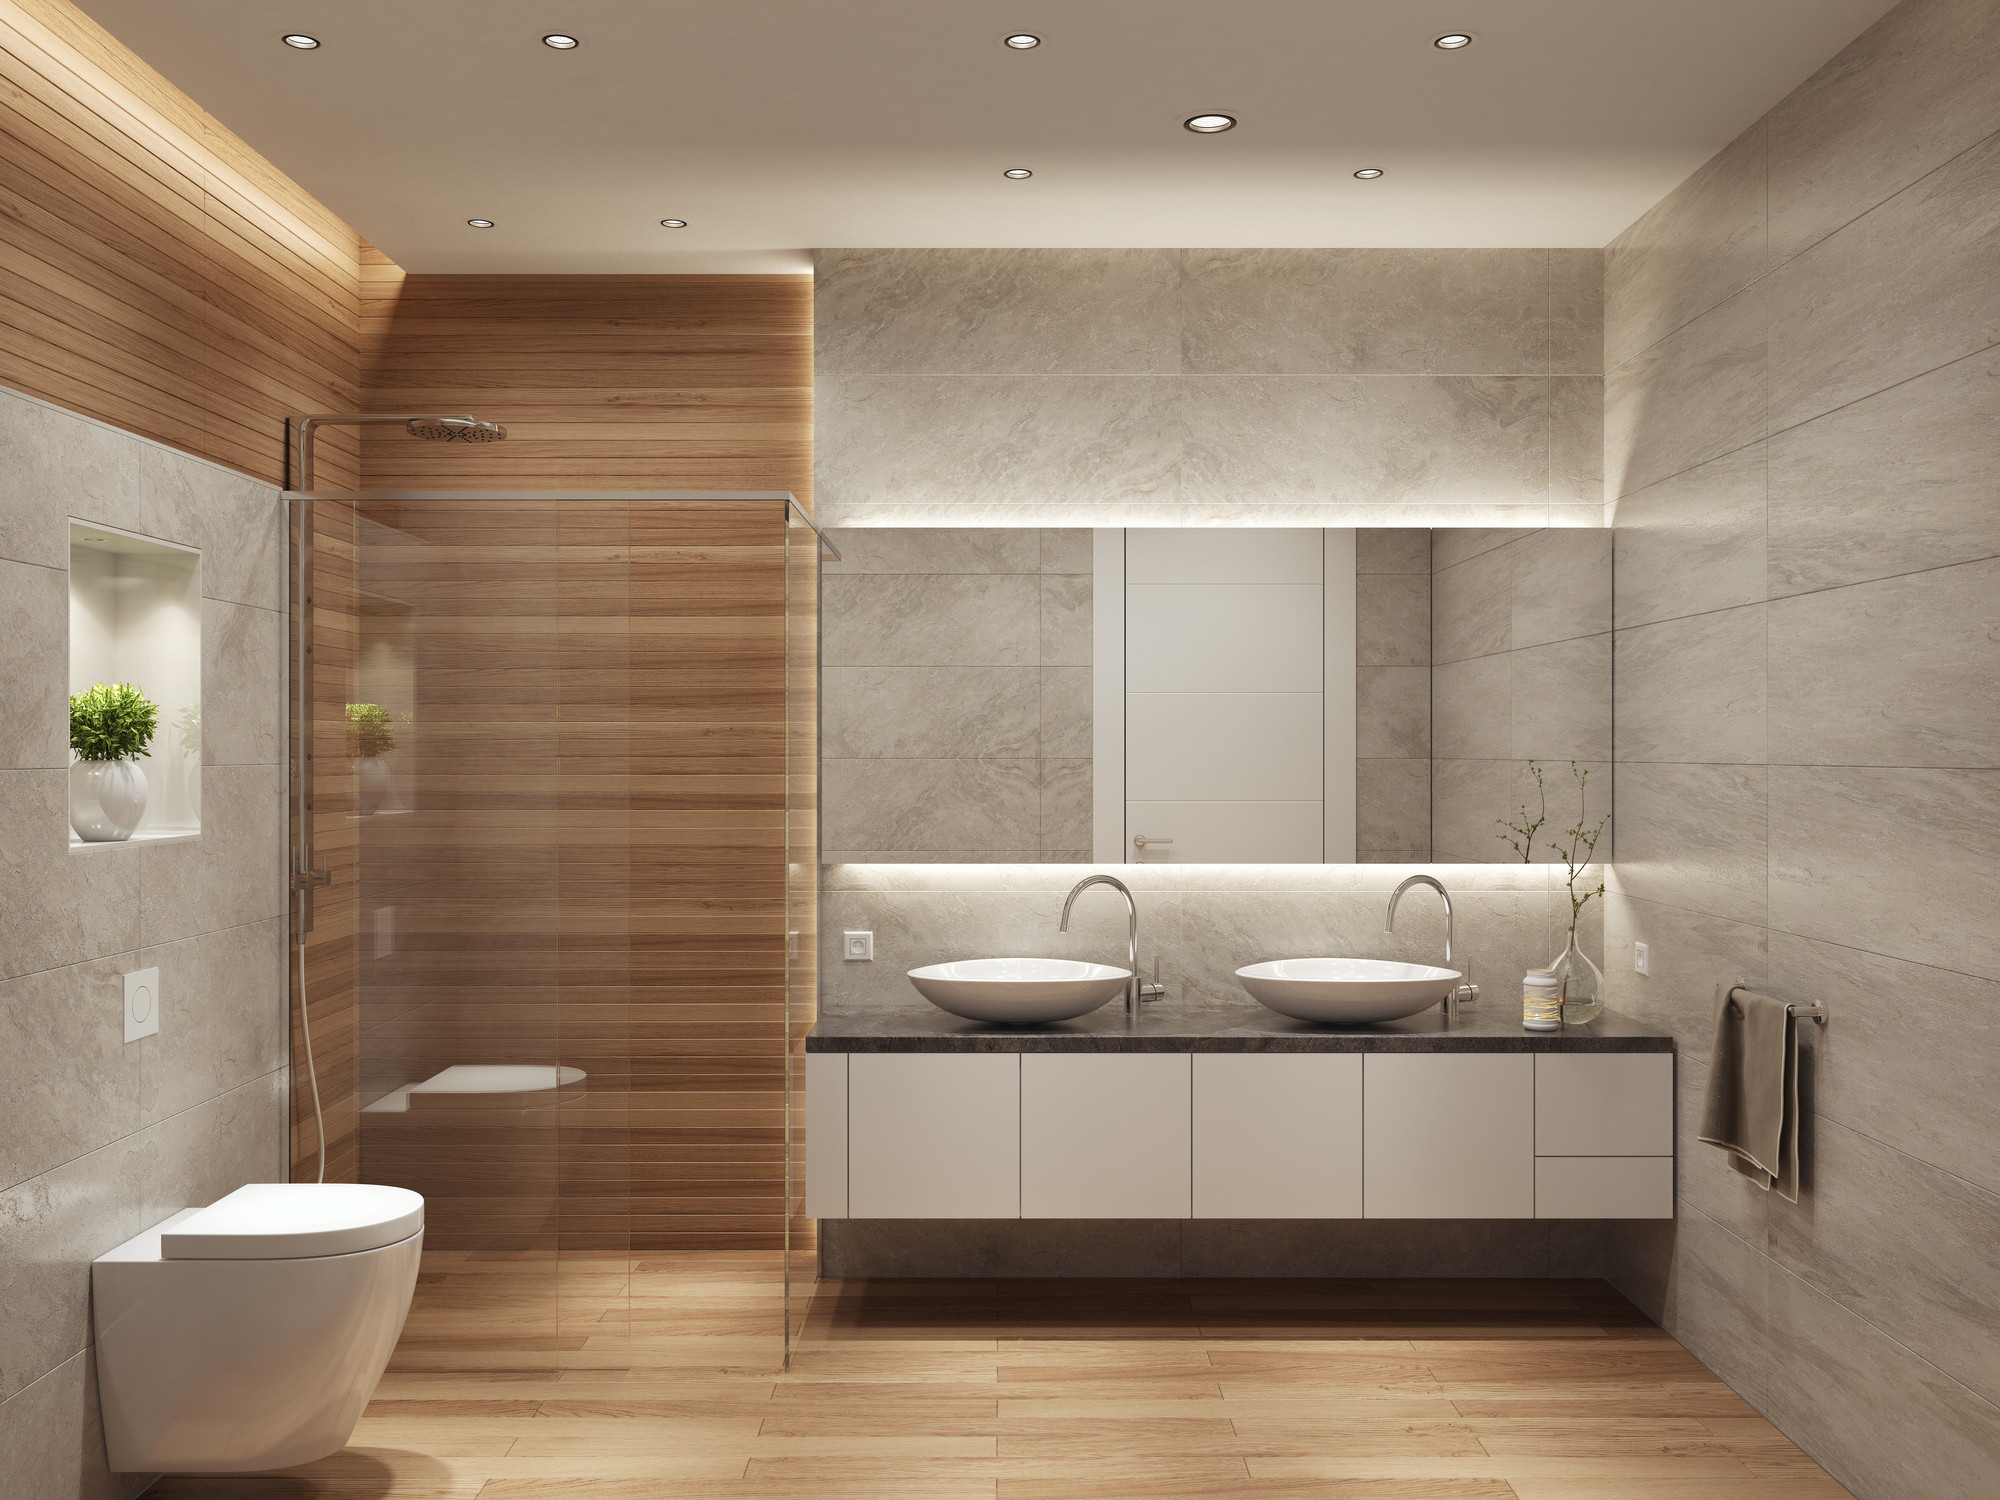 Nuevos revestimientos para baños actuales - Baños modernos